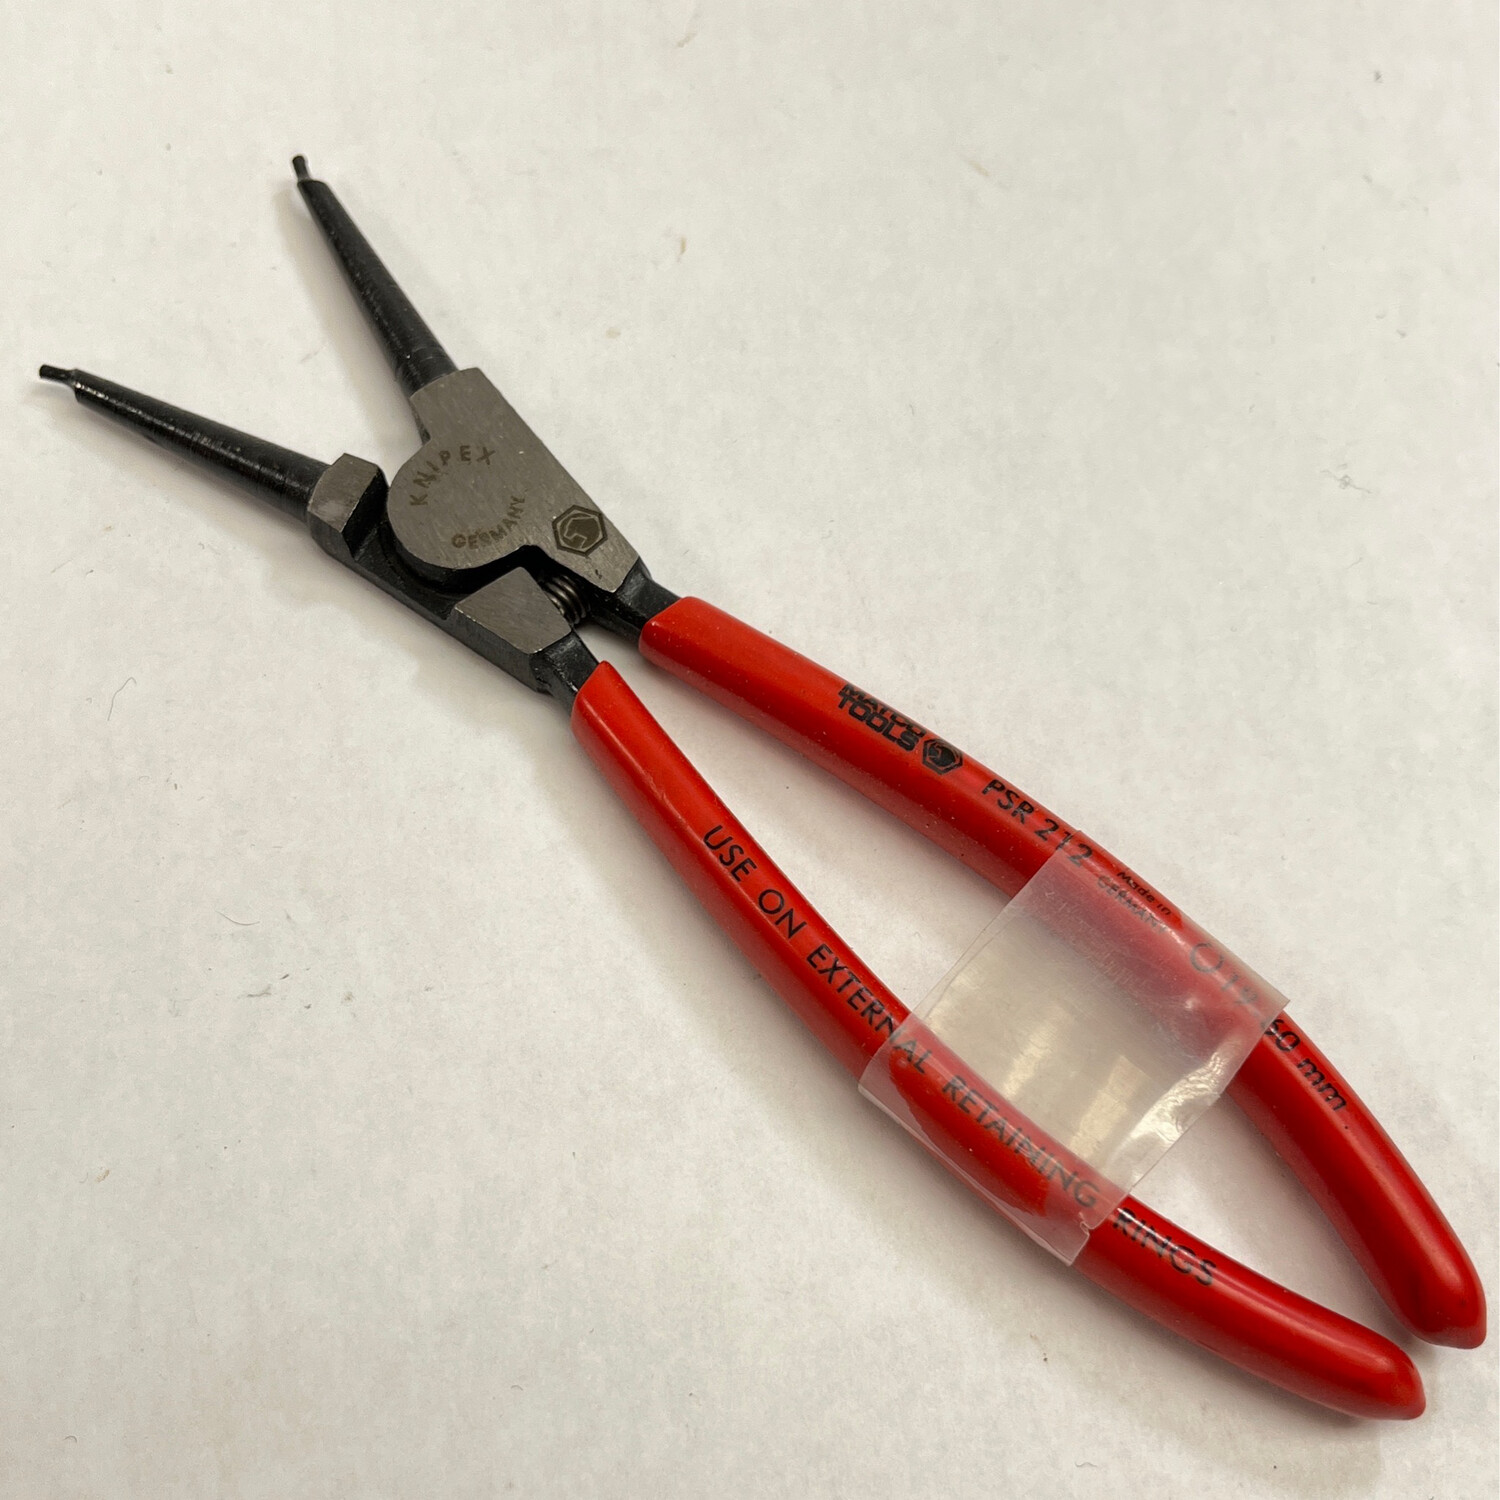 Matco Tools Knipex Circlip External Snap Ring Pliers, PSR212